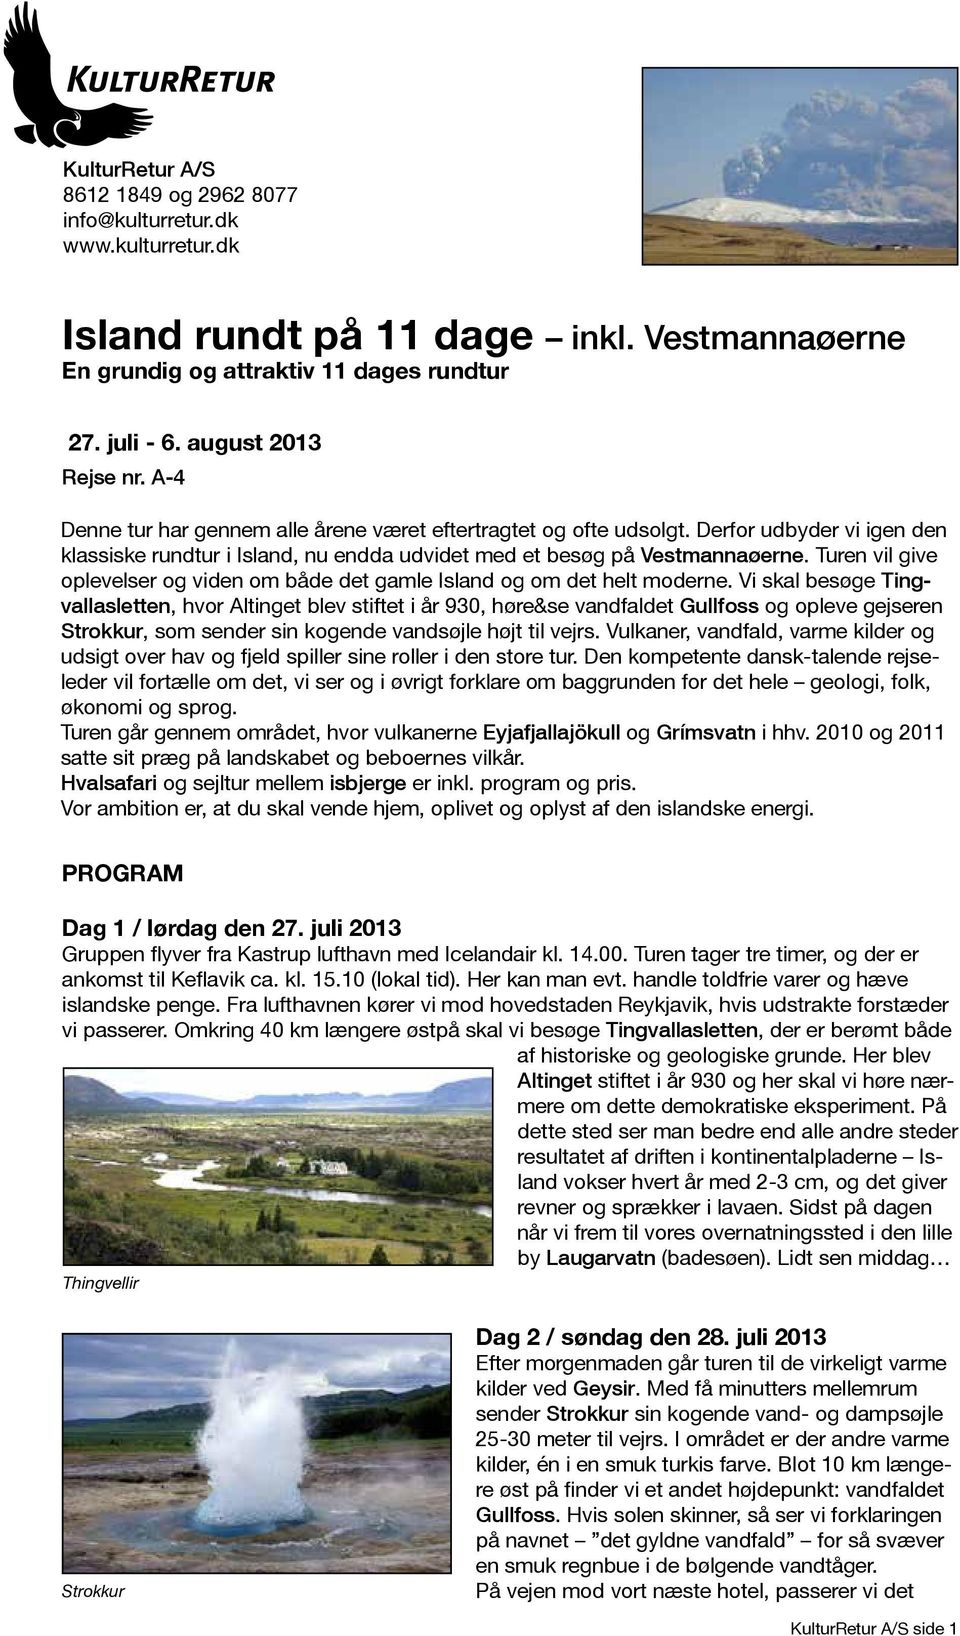 Vi skal besøge Tingvallasletten, hvor Altinget blev stiftet i år 930, høre&se vandfaldet Gullfoss og opleve gejseren Strokkur, som sender sin kogende vandsøjle højt til vejrs.